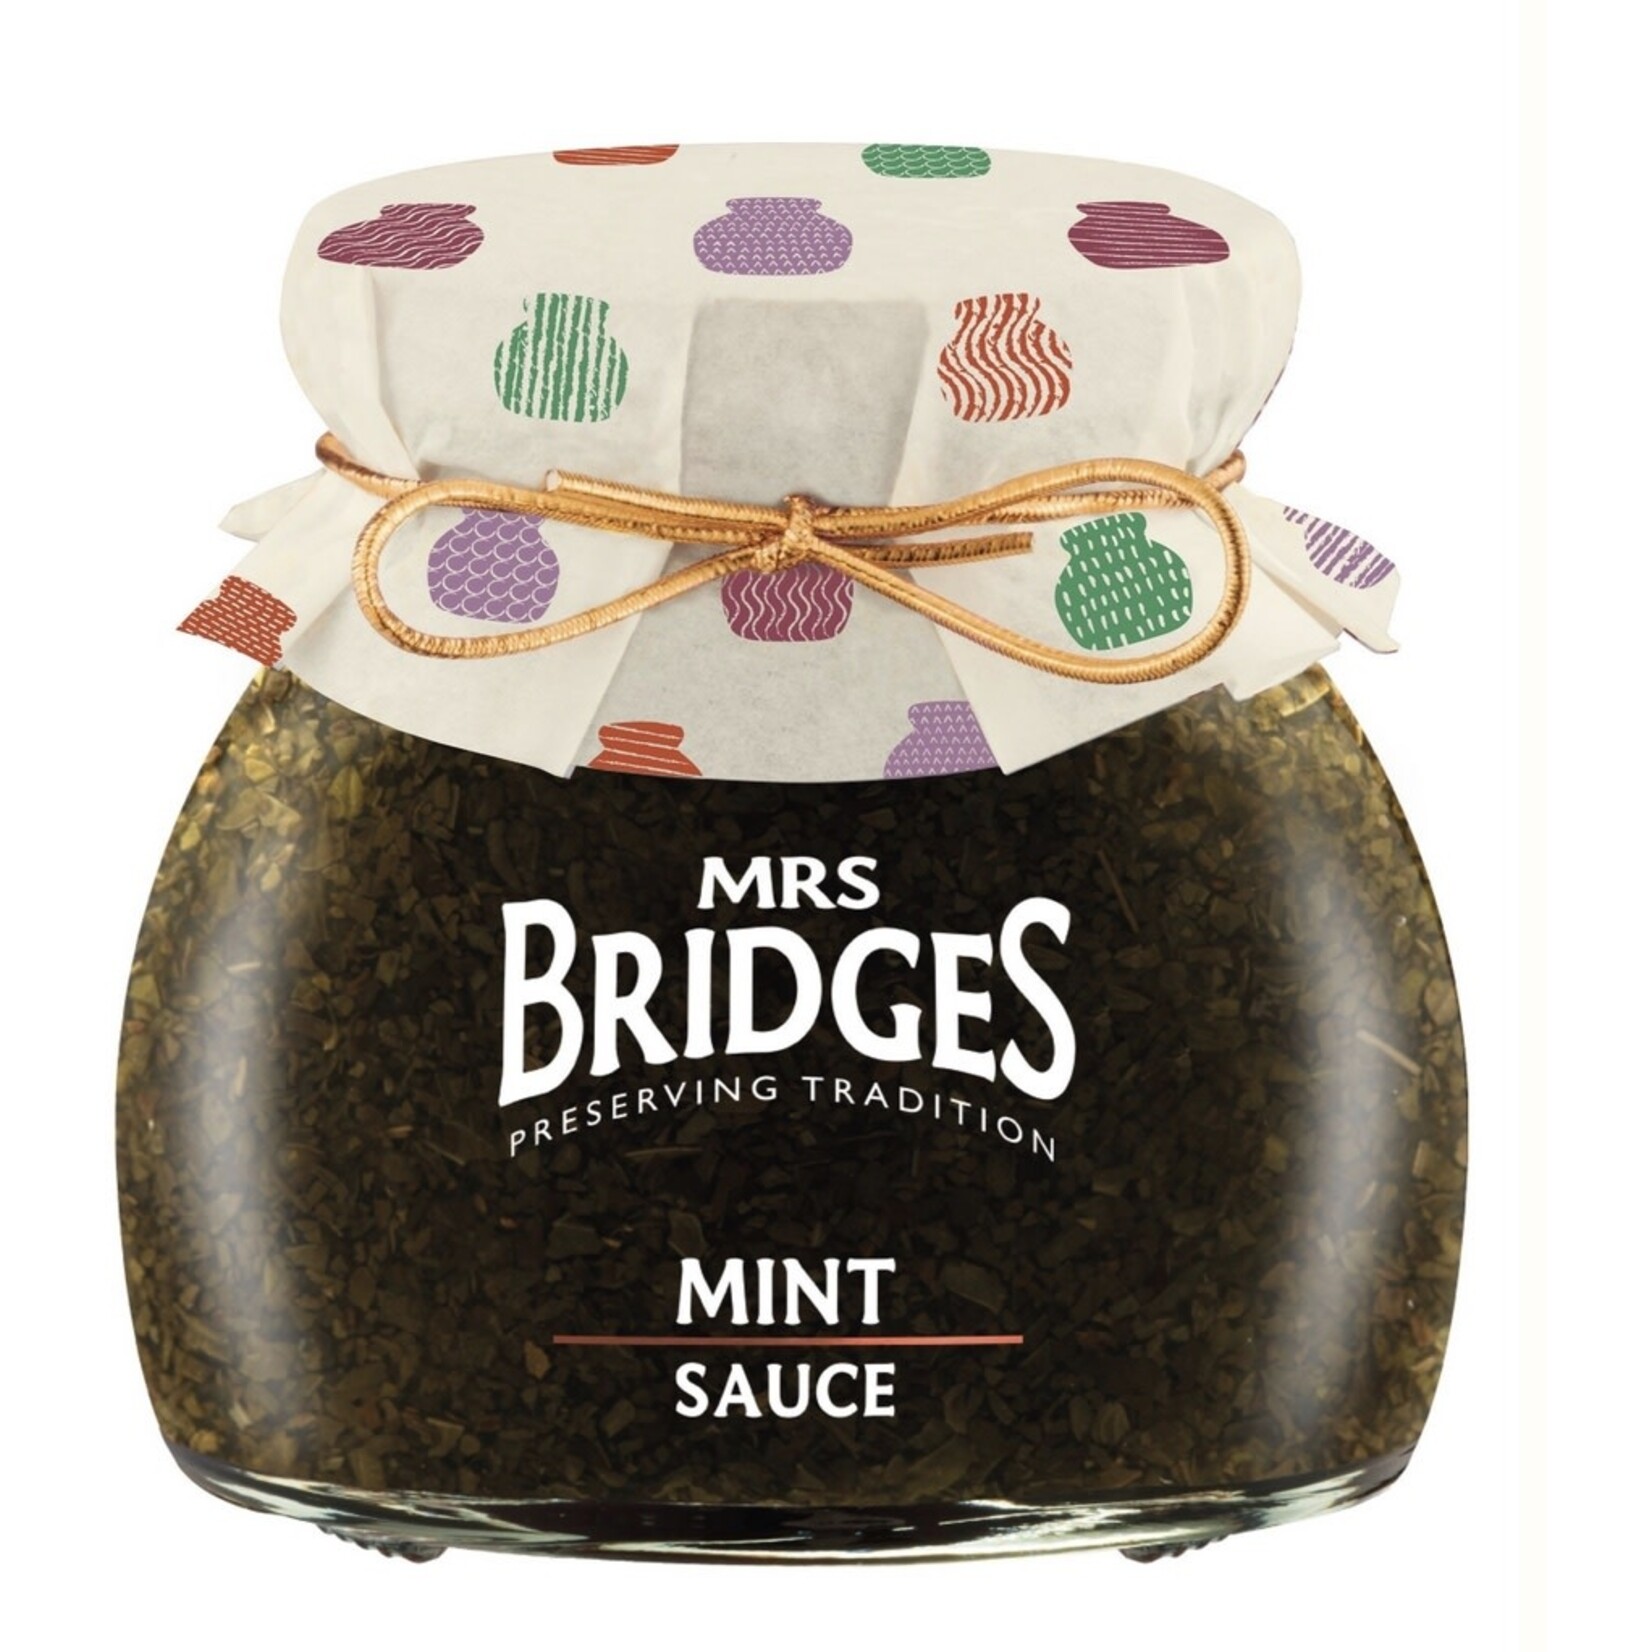 MRS BRIDGES MRS BRIDGES Mint Sauce